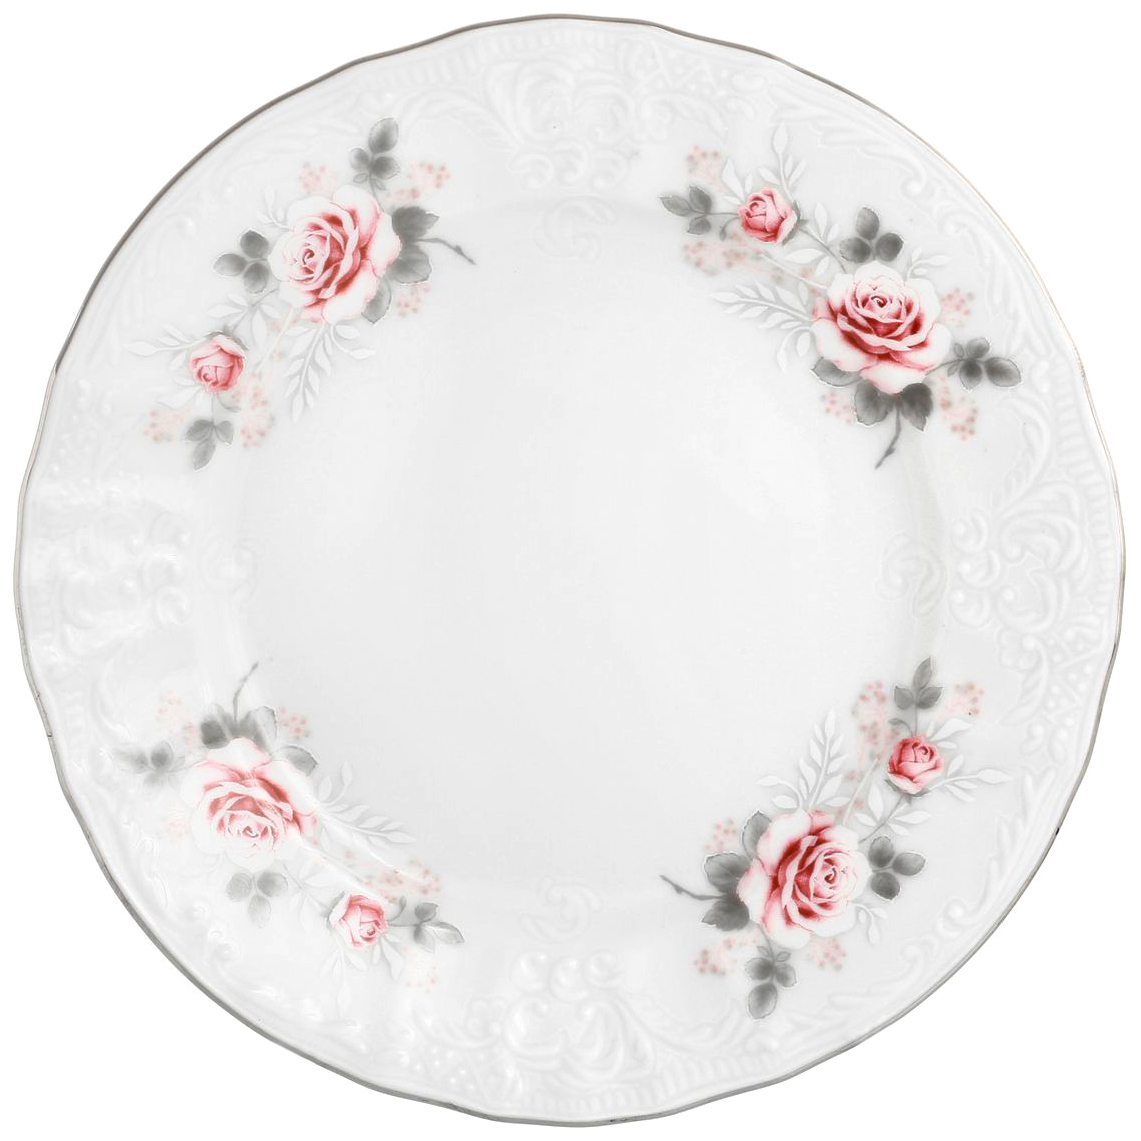 Набор десертных тарелок Bernadotte Бледные розы 17 см 6 шт набор десертных тарелок thun1794 констанция 17 см 6 шт